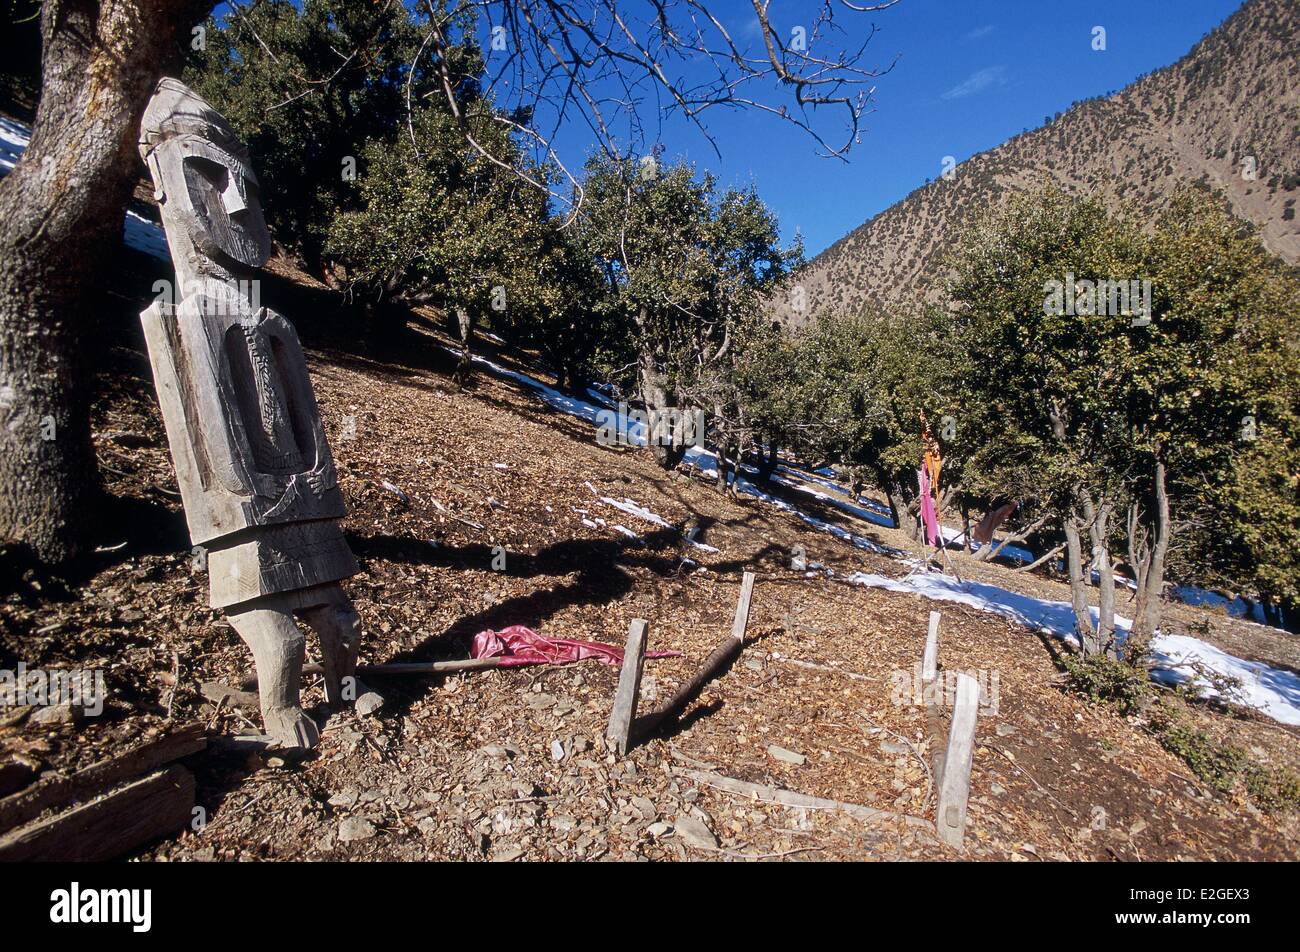 Vallées Kalash Khyber Pakhtunkhwa au Pakistan la vallée de Rumbur Grum village (2000m) dernier Gandao statue funéraire encore être vu dans un cimetière Kalash aujourd'hui systématiquement volés ou vandalisés ces statues en bois coûteux ne sont plus sculptés Banque D'Images